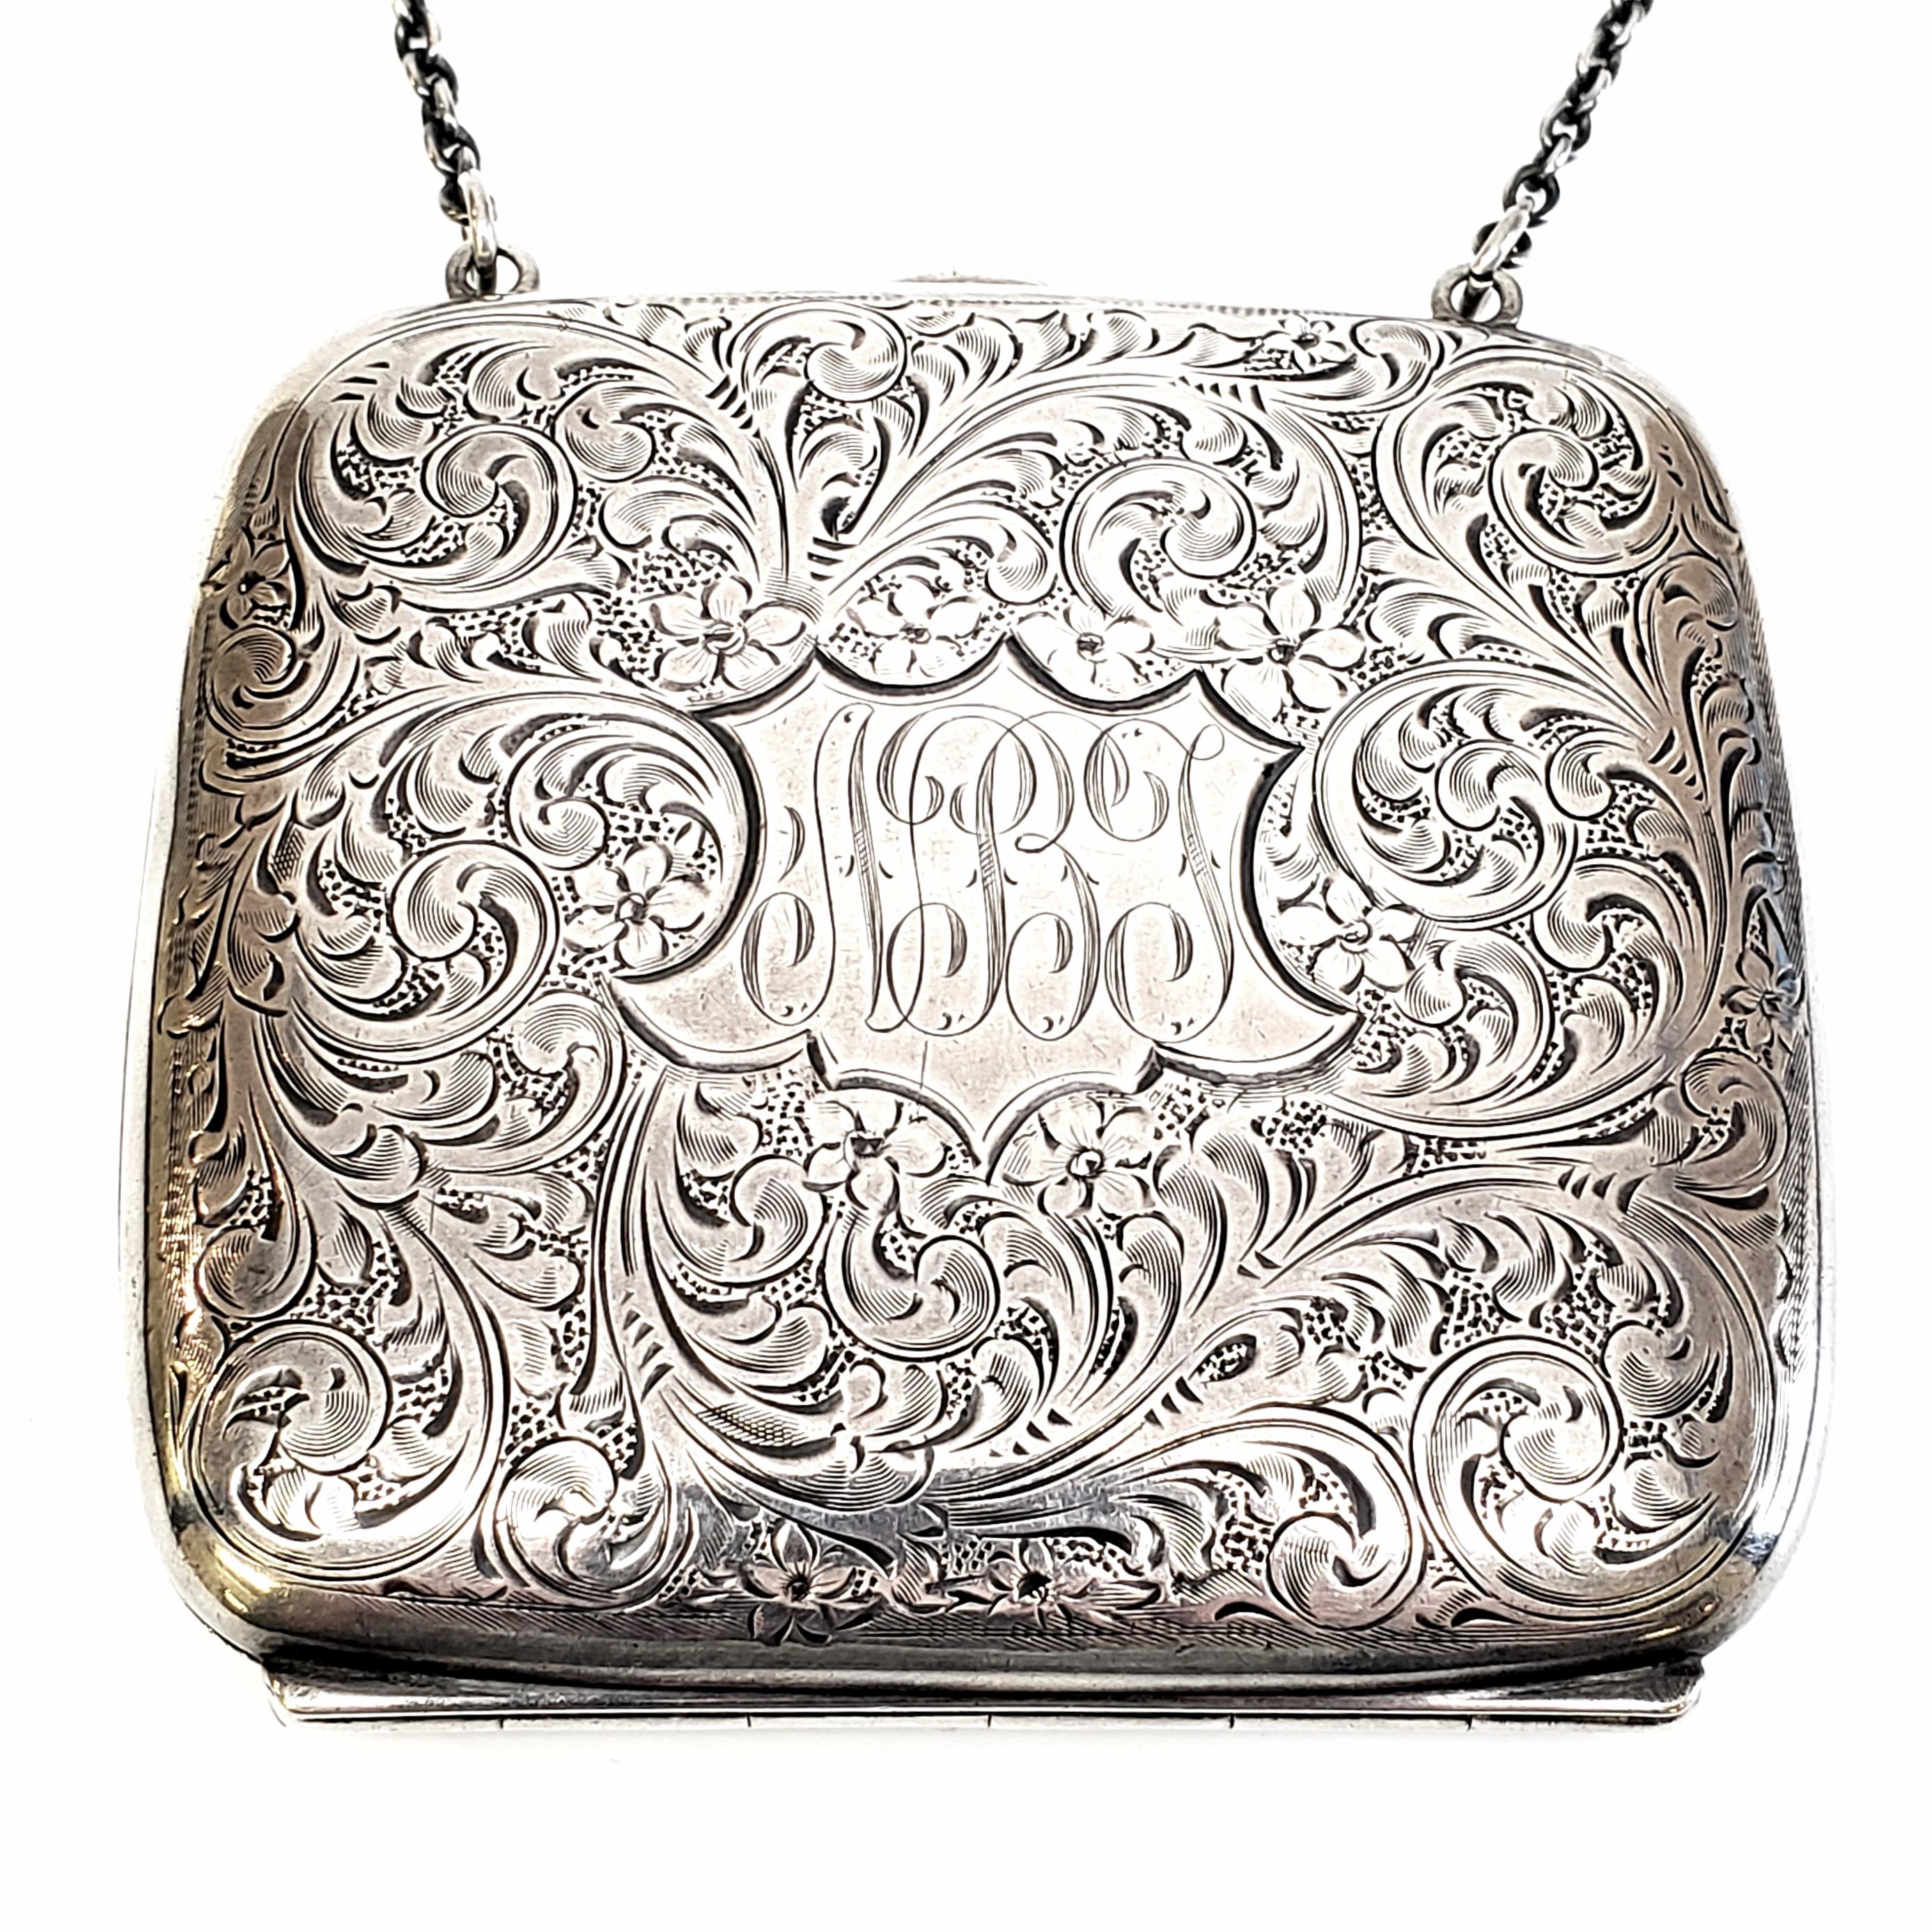 antique silver coin purse